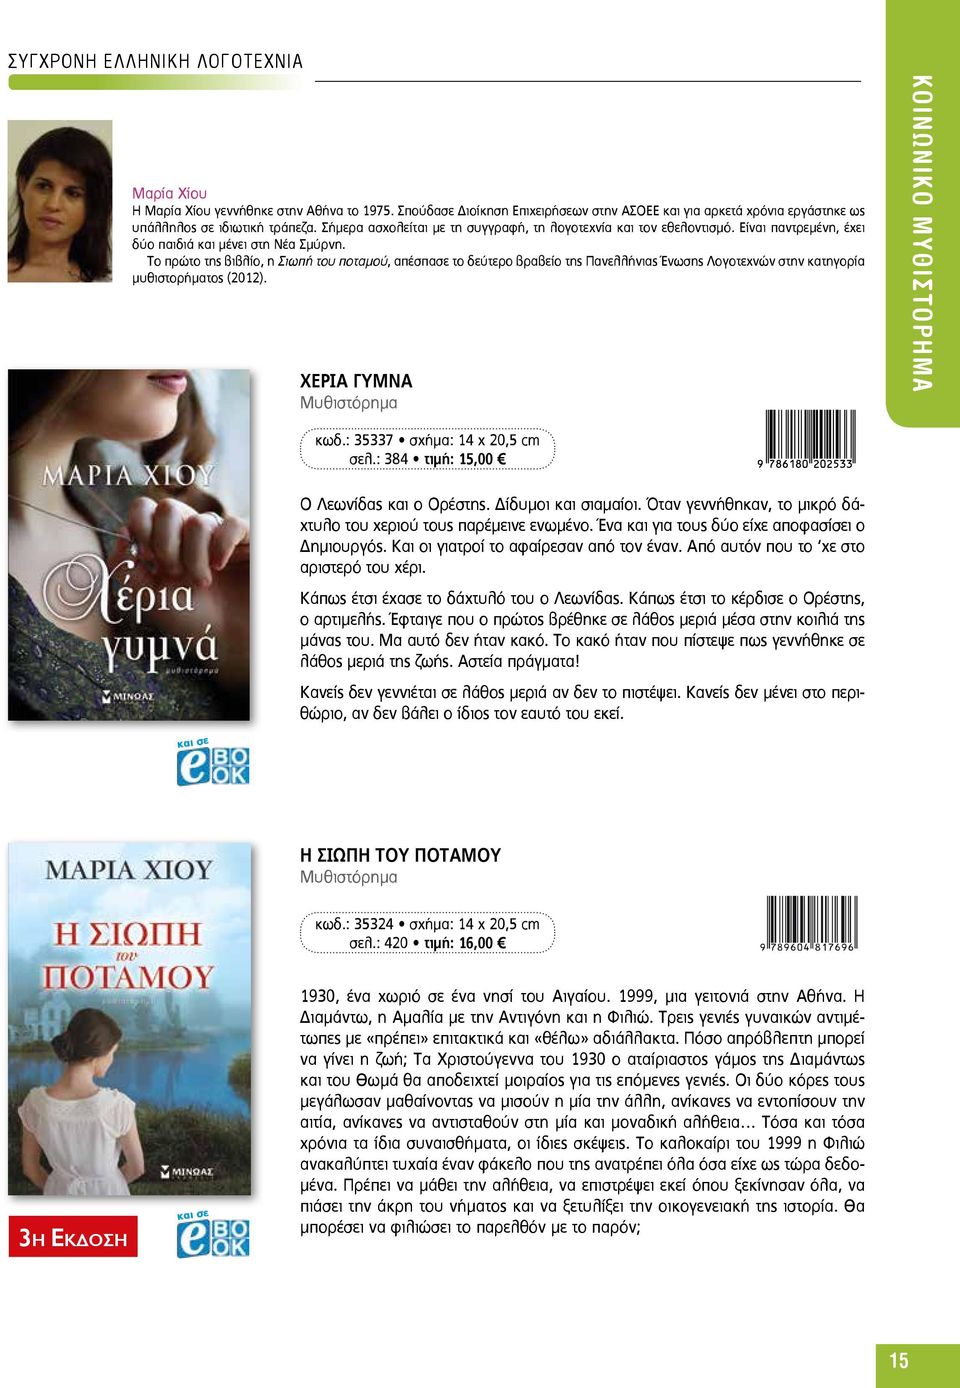 Το πρώτο της βιβλίο, η Σιωπή του ποταμού, απέσπασε το δεύτερο βραβείο της Πανελλήνιας Ένωσης Λογοτεχνών στην κατηγορία μυθιστορήματος (2012). ΧΕΡΙΑ ΓΥΜΝΑ KΟΙΝΩΝΙΚΟ ΜΥΘΙΣΤΟΡΗΜΑ κωδ.